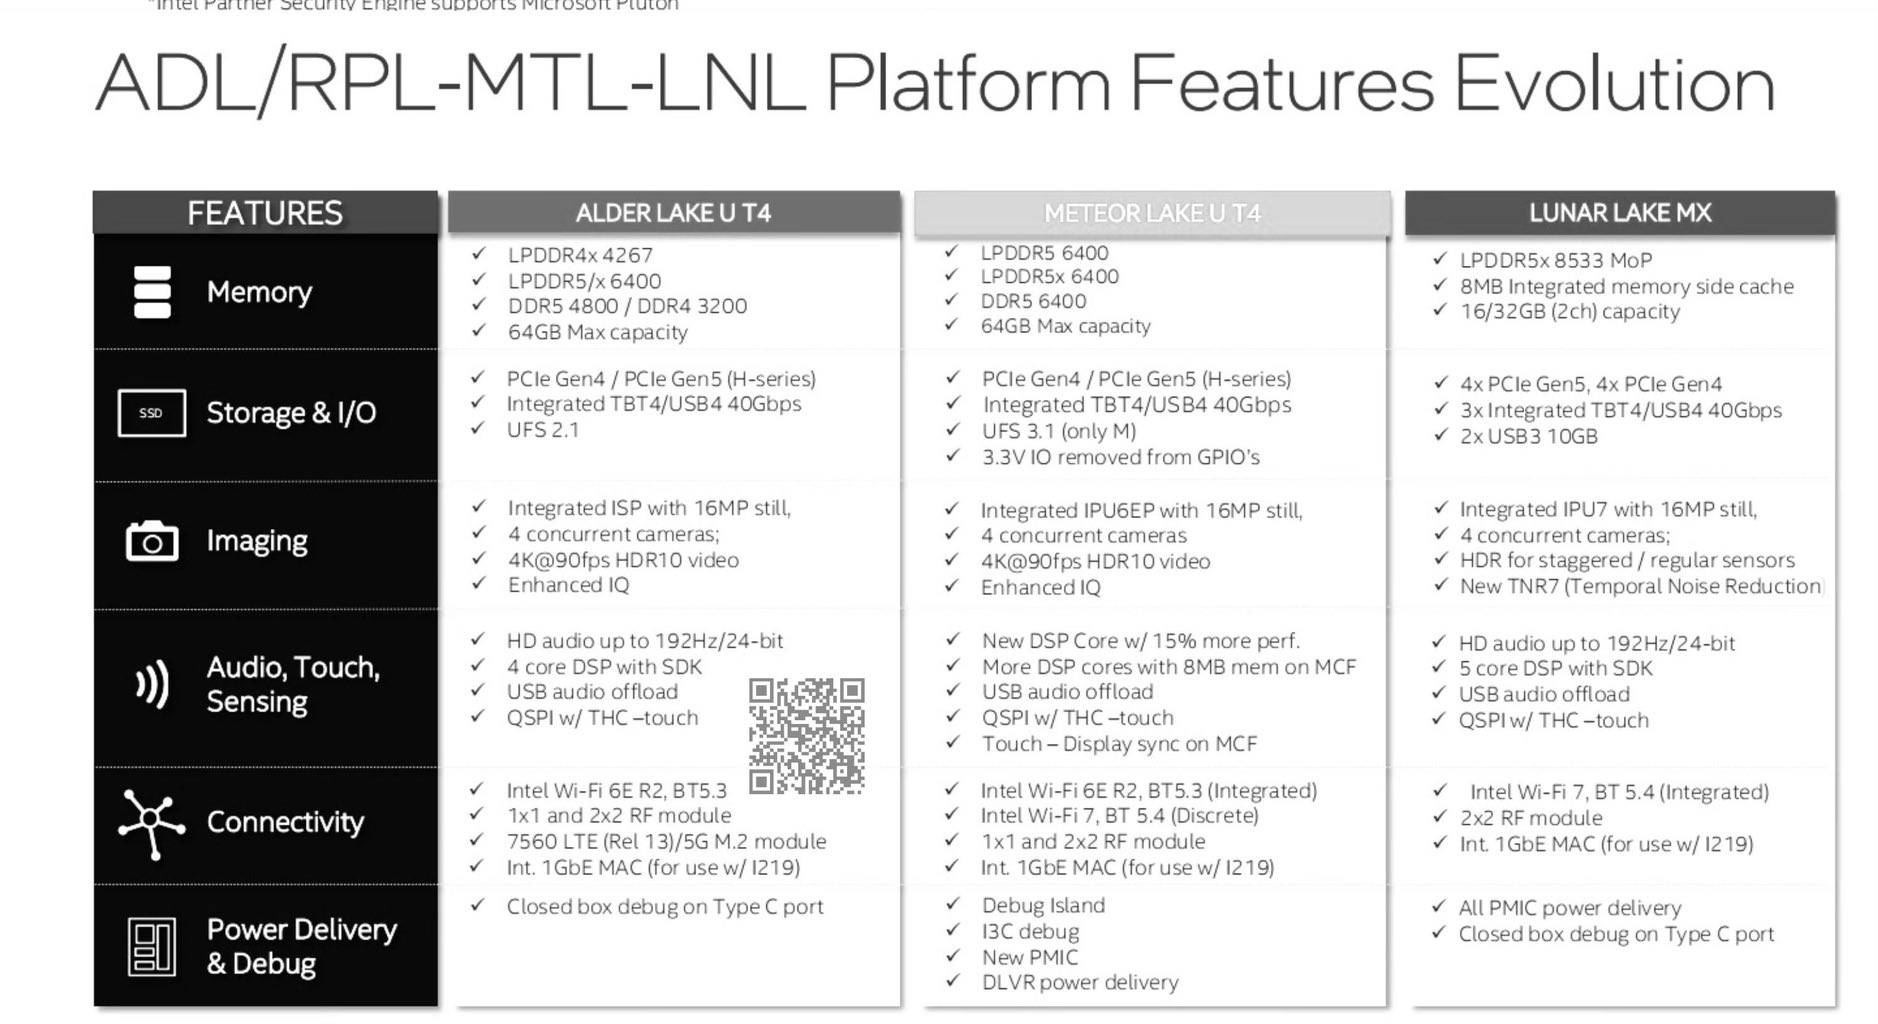 Rò rỉ Intel Lunar Lake-MX: lõi CPU 4+4, lõi GPU 8 Xe2